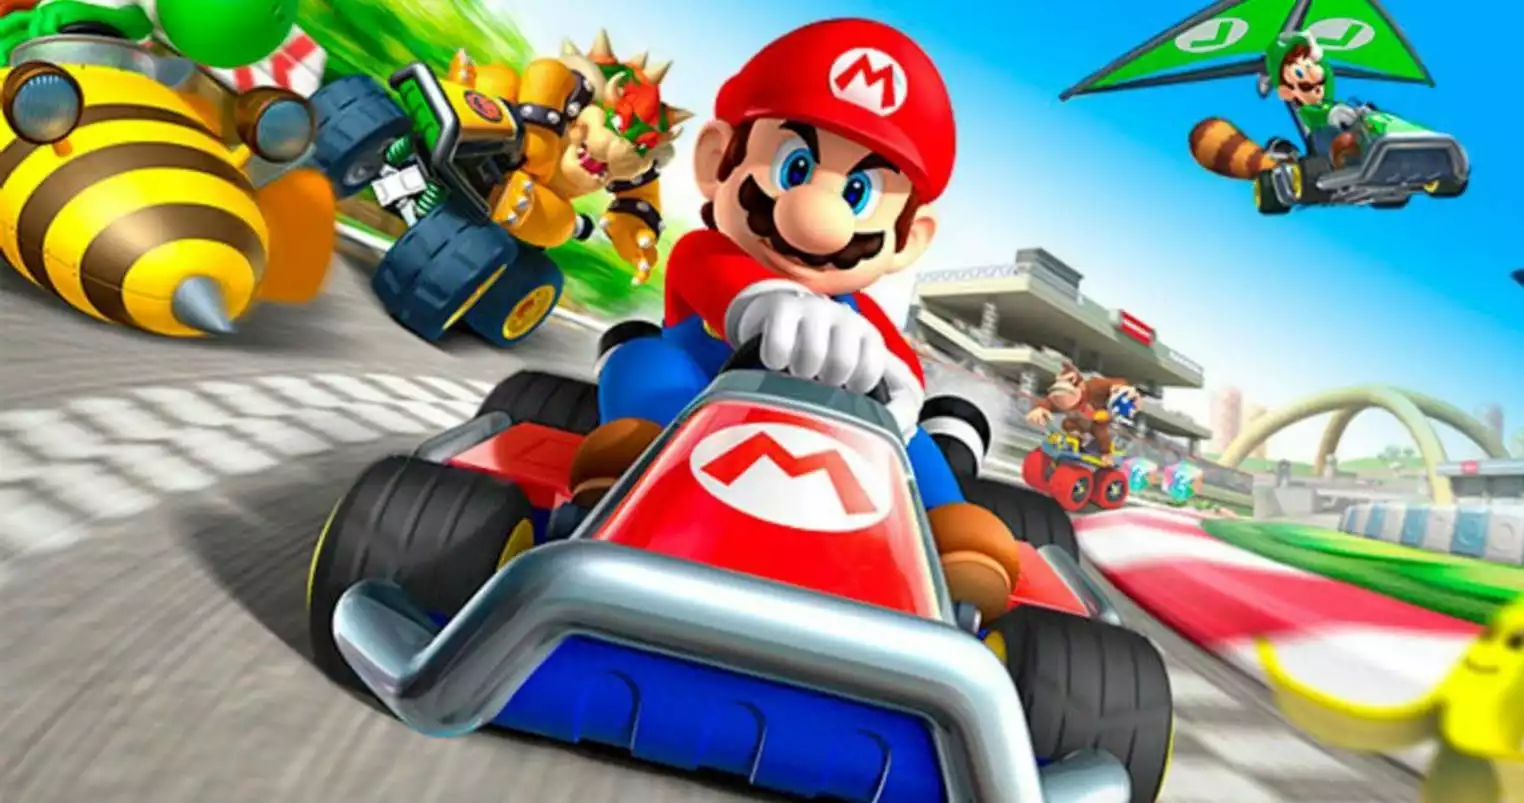 Le jeu vidéo «Mario Kart tour» enfin sur smartphone - La Voix du Nord